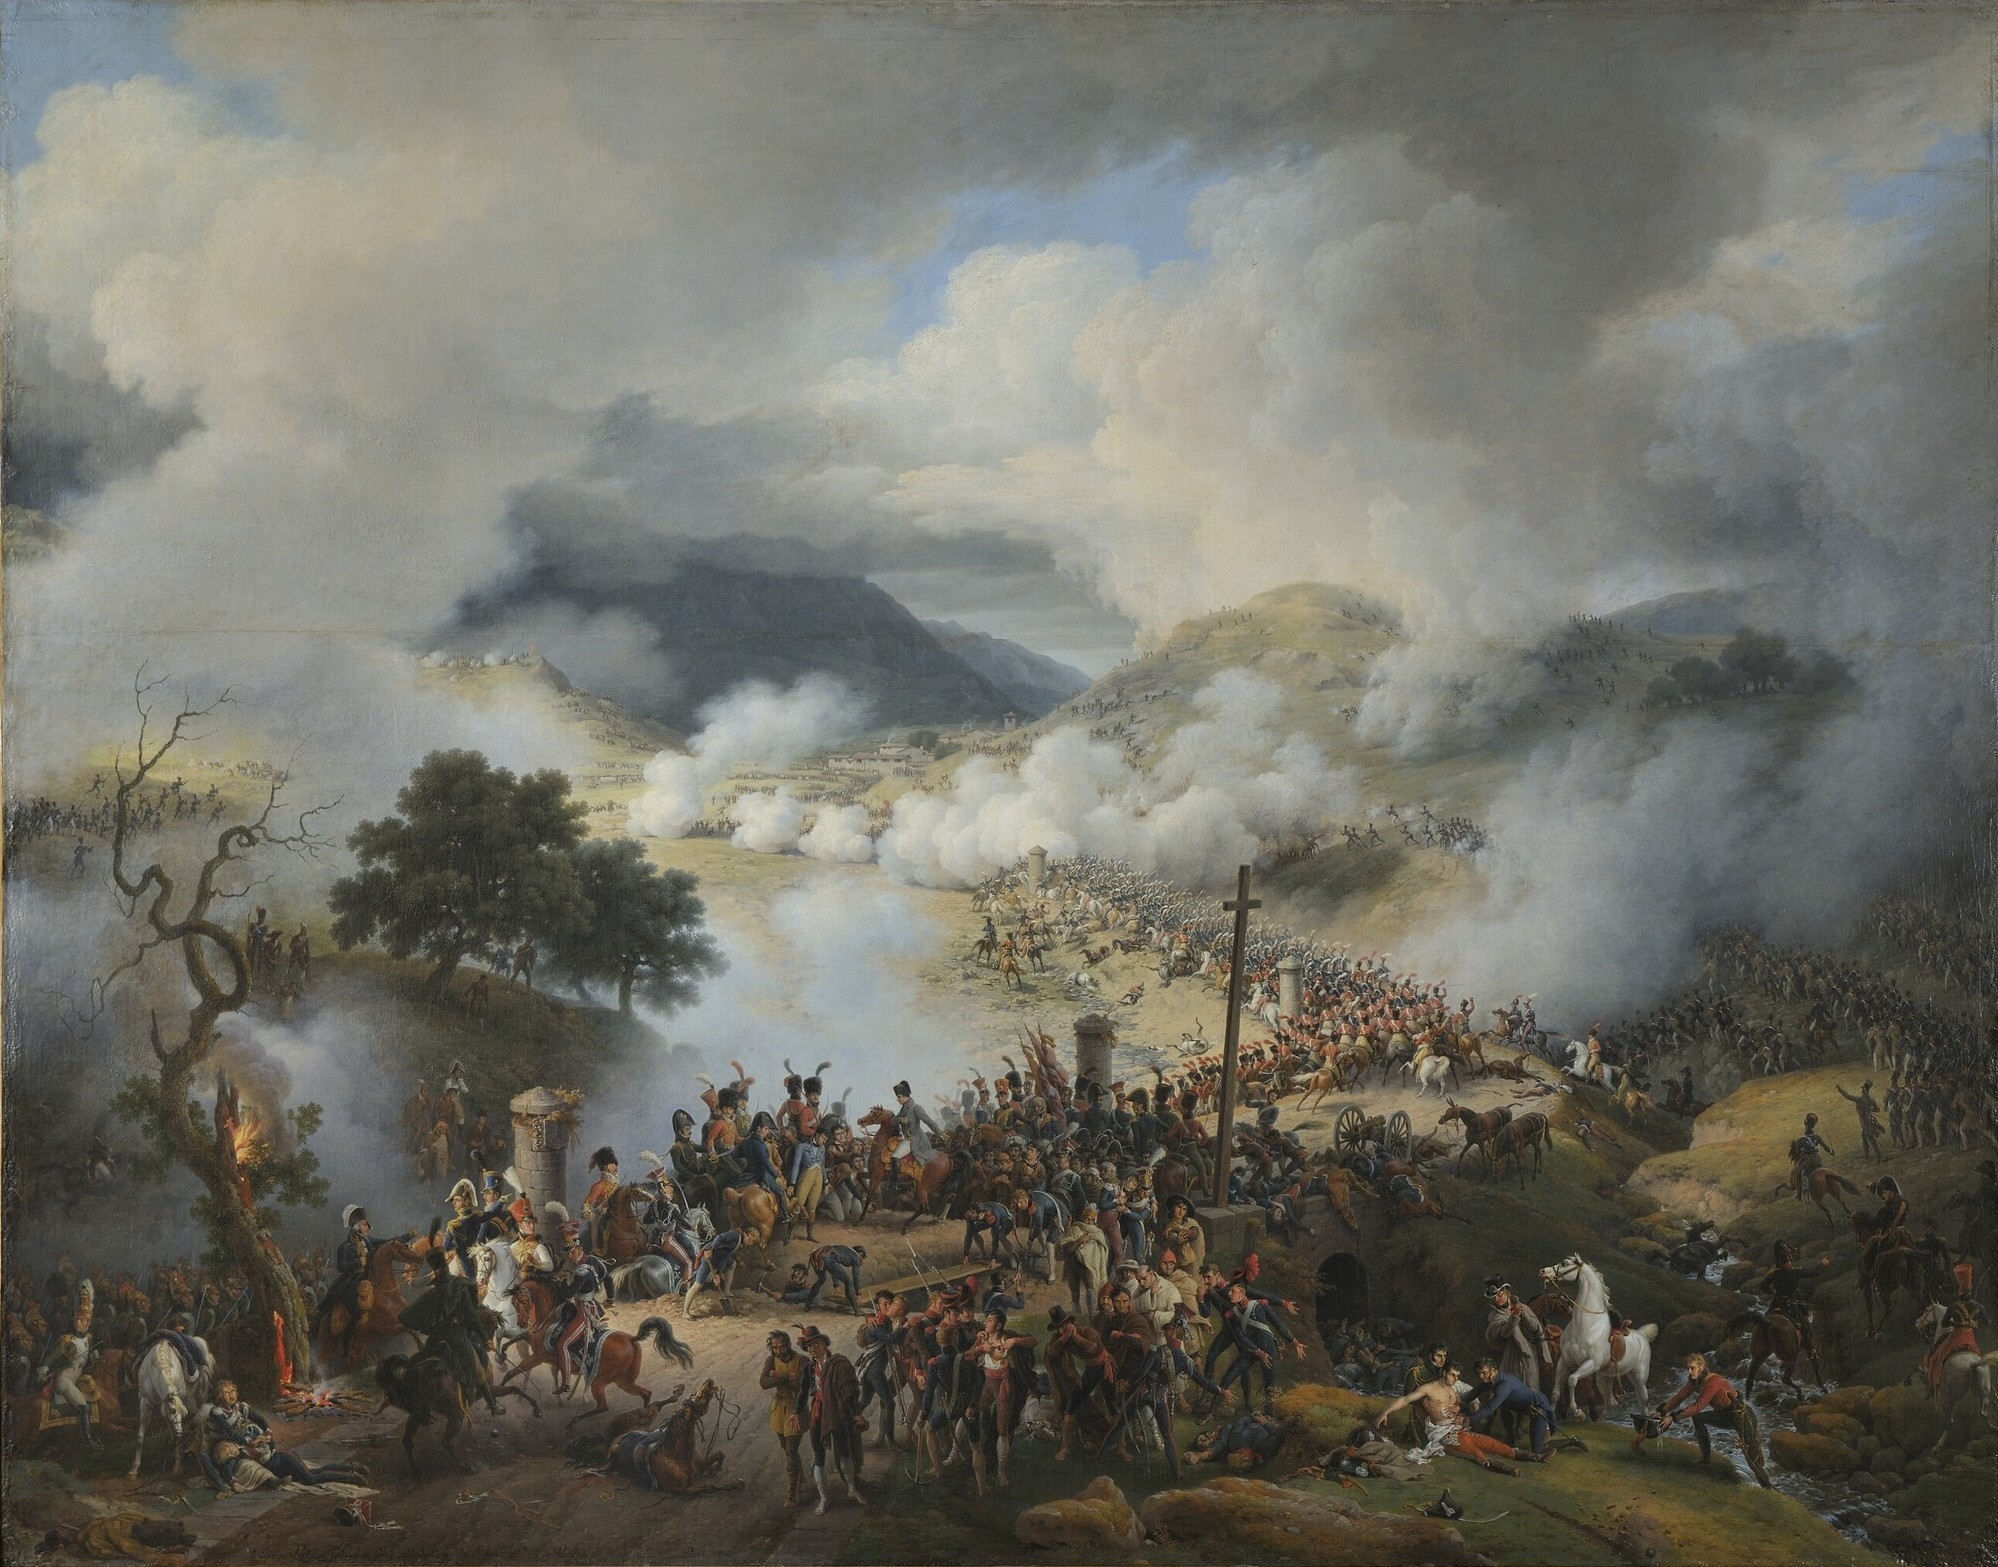 La Batalla de Somosierra